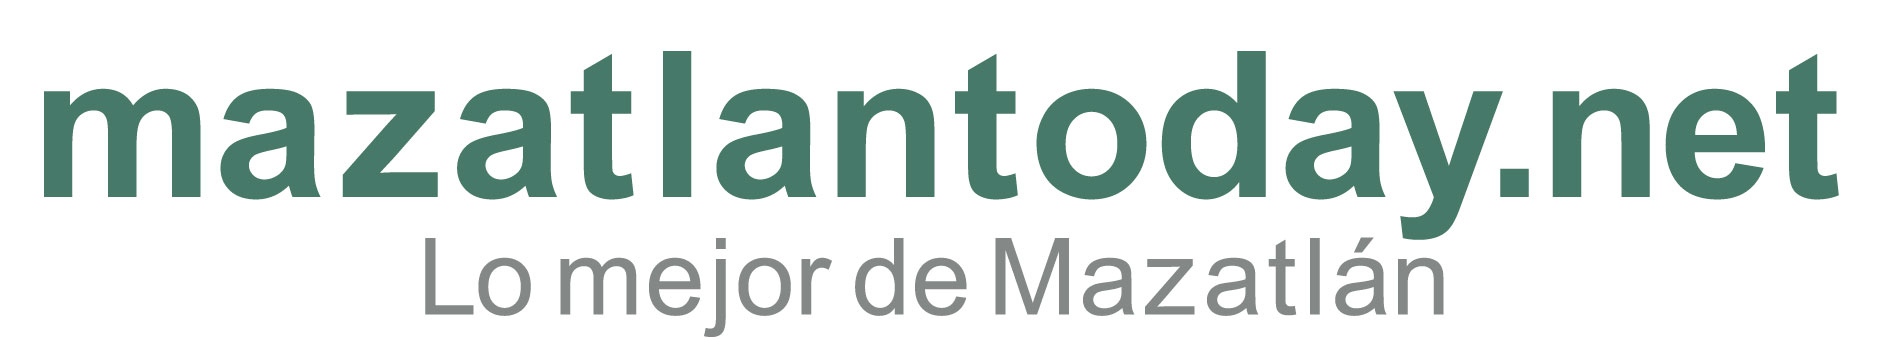 Información sobre Isla de La Piedra Mazatlán | mazatlantoday.net presentación de guía de viaje 2023 | INICIO